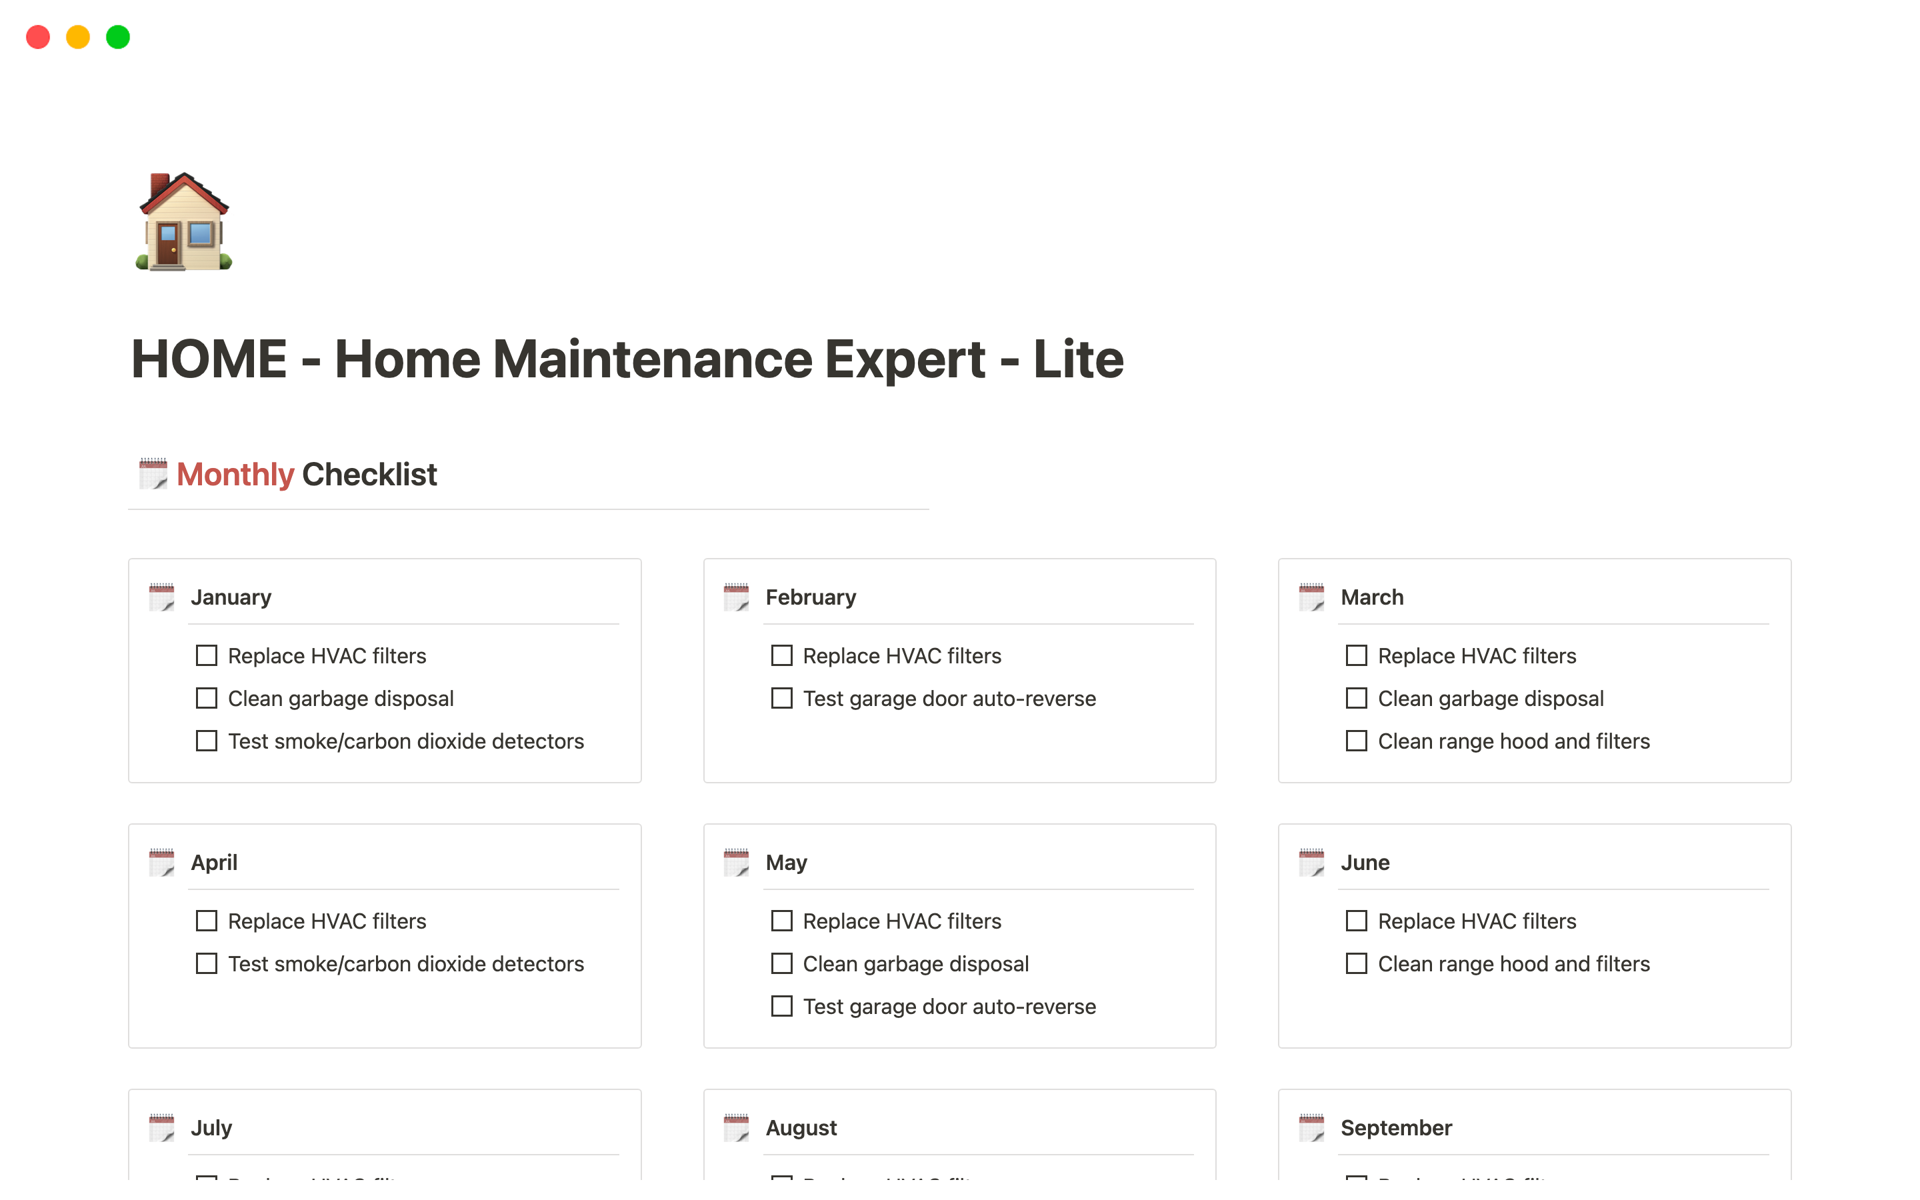 Uma prévia do modelo para HOME - Home Maintenance Expert - Lite